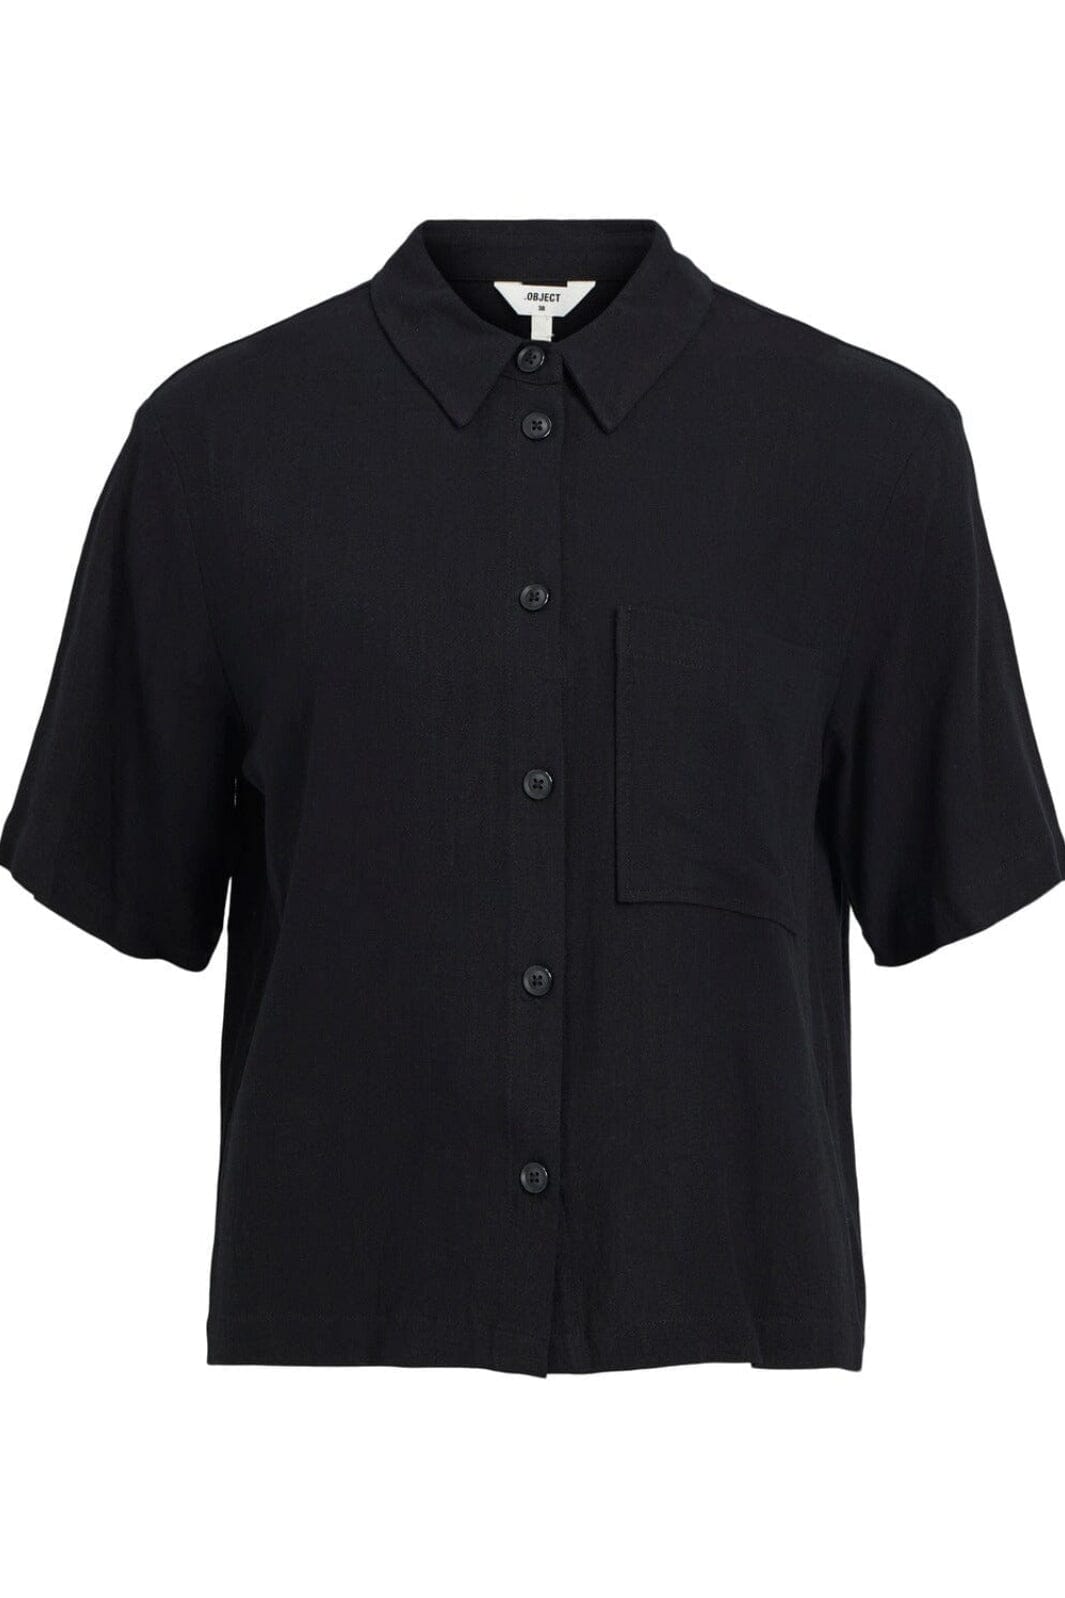 Object - Objsanne 2/4 Shirt - 4399036 Black Skjorter 